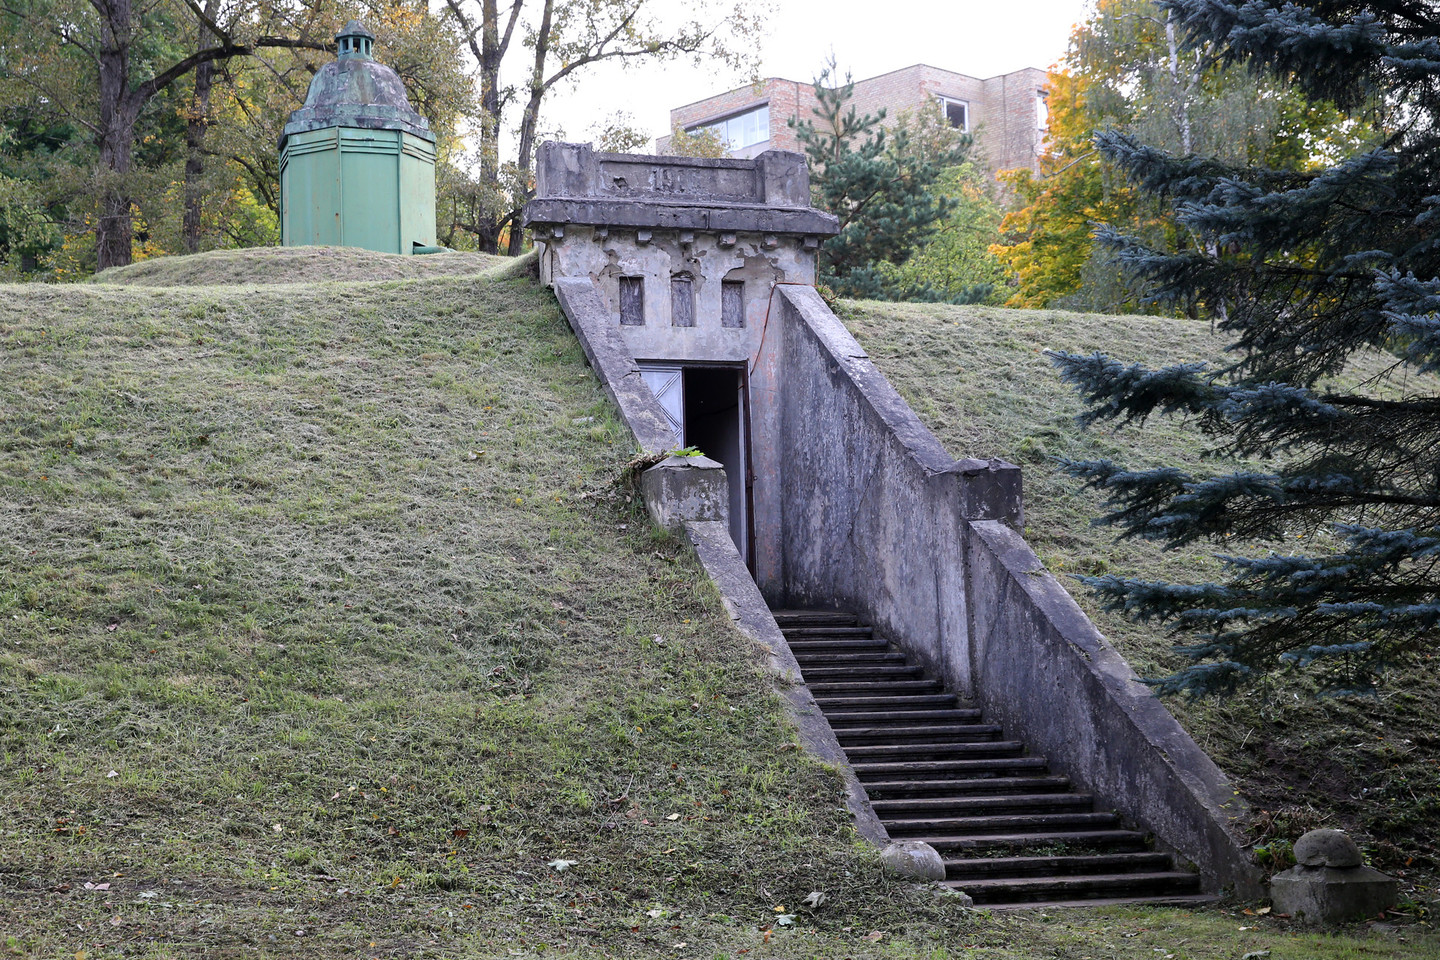 Įspūdingo grožio Vilniaus vandens saugykla atveria duris.<br>R. Danisevičiaus nuotr.